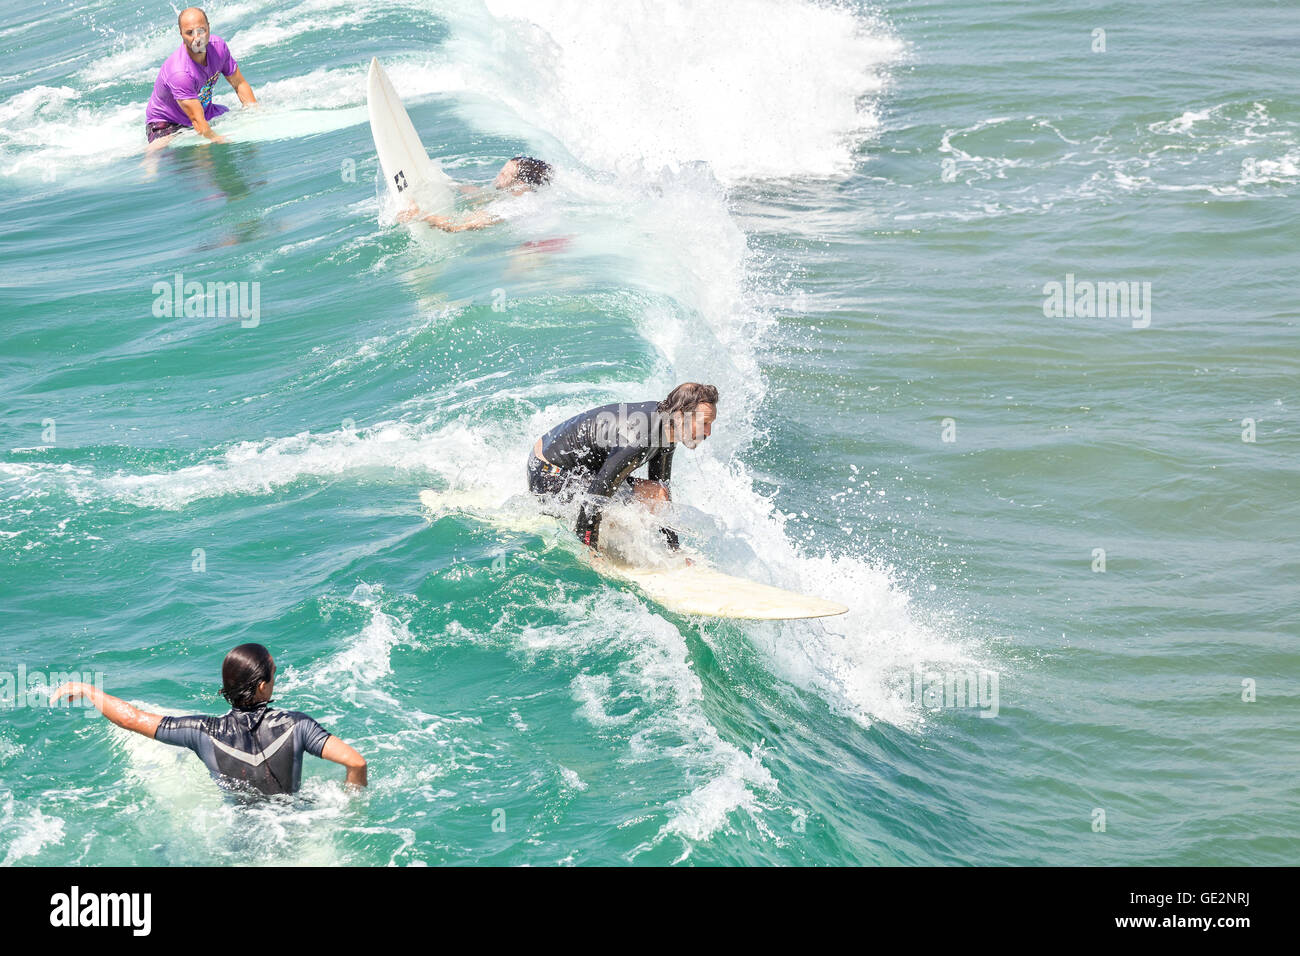 Venice, Kalifornien, USA - 22. August 2015: Gleiten Surfer unter anderem Wellen an einem schönen sonnigen Tag warten. Stockfoto